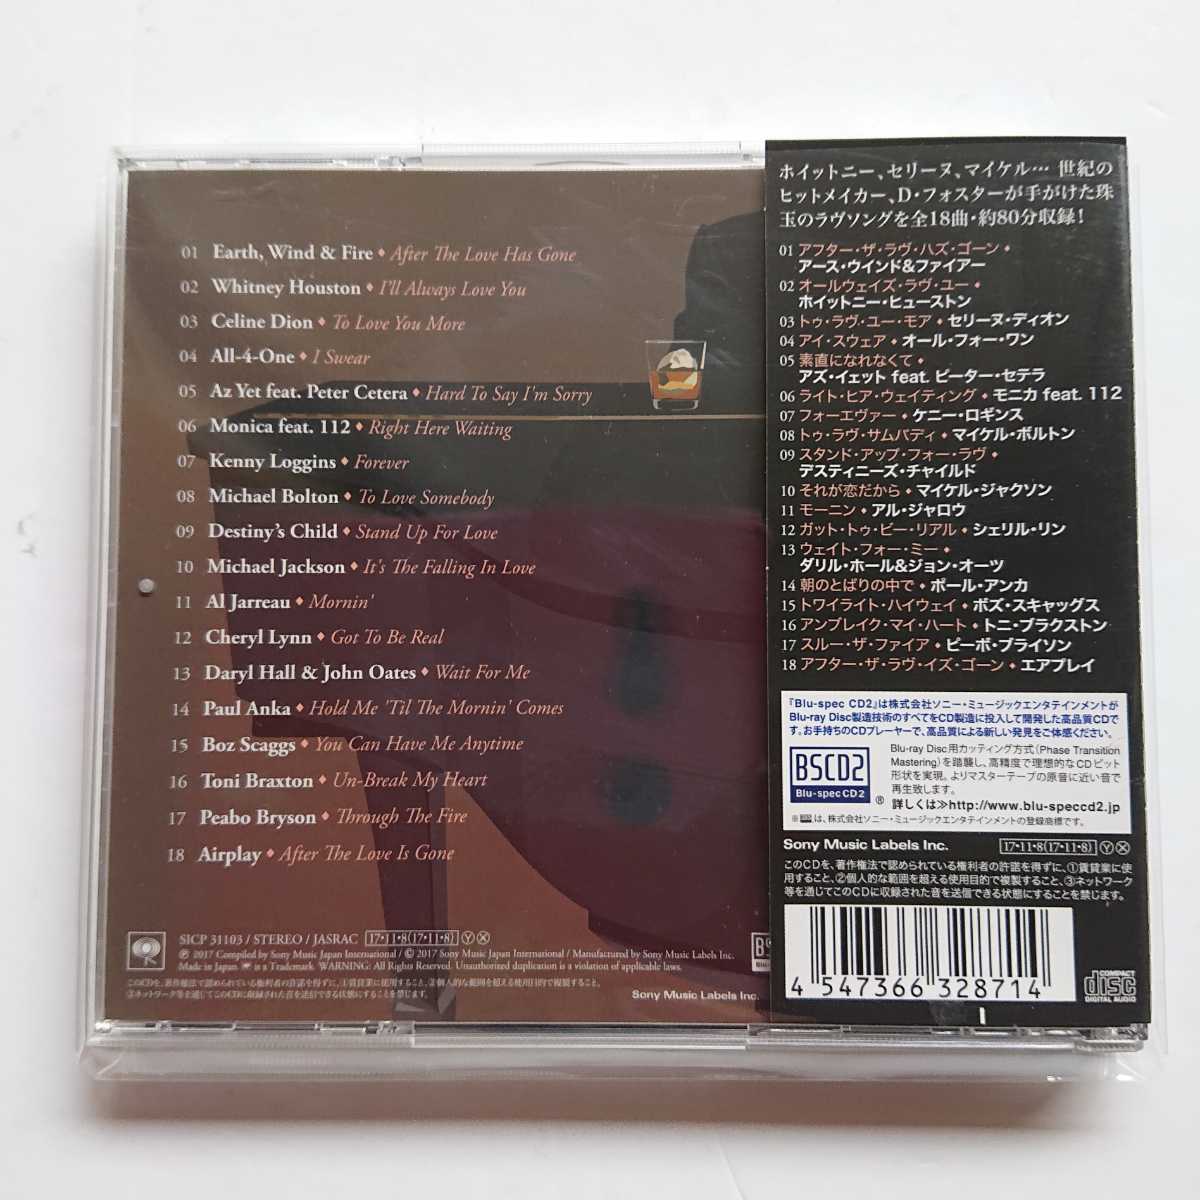 【国内盤帯付きBlu-spec CD2】メロディーズ・オブ・ラヴ～デイヴィッド・フォスター・ソングブック